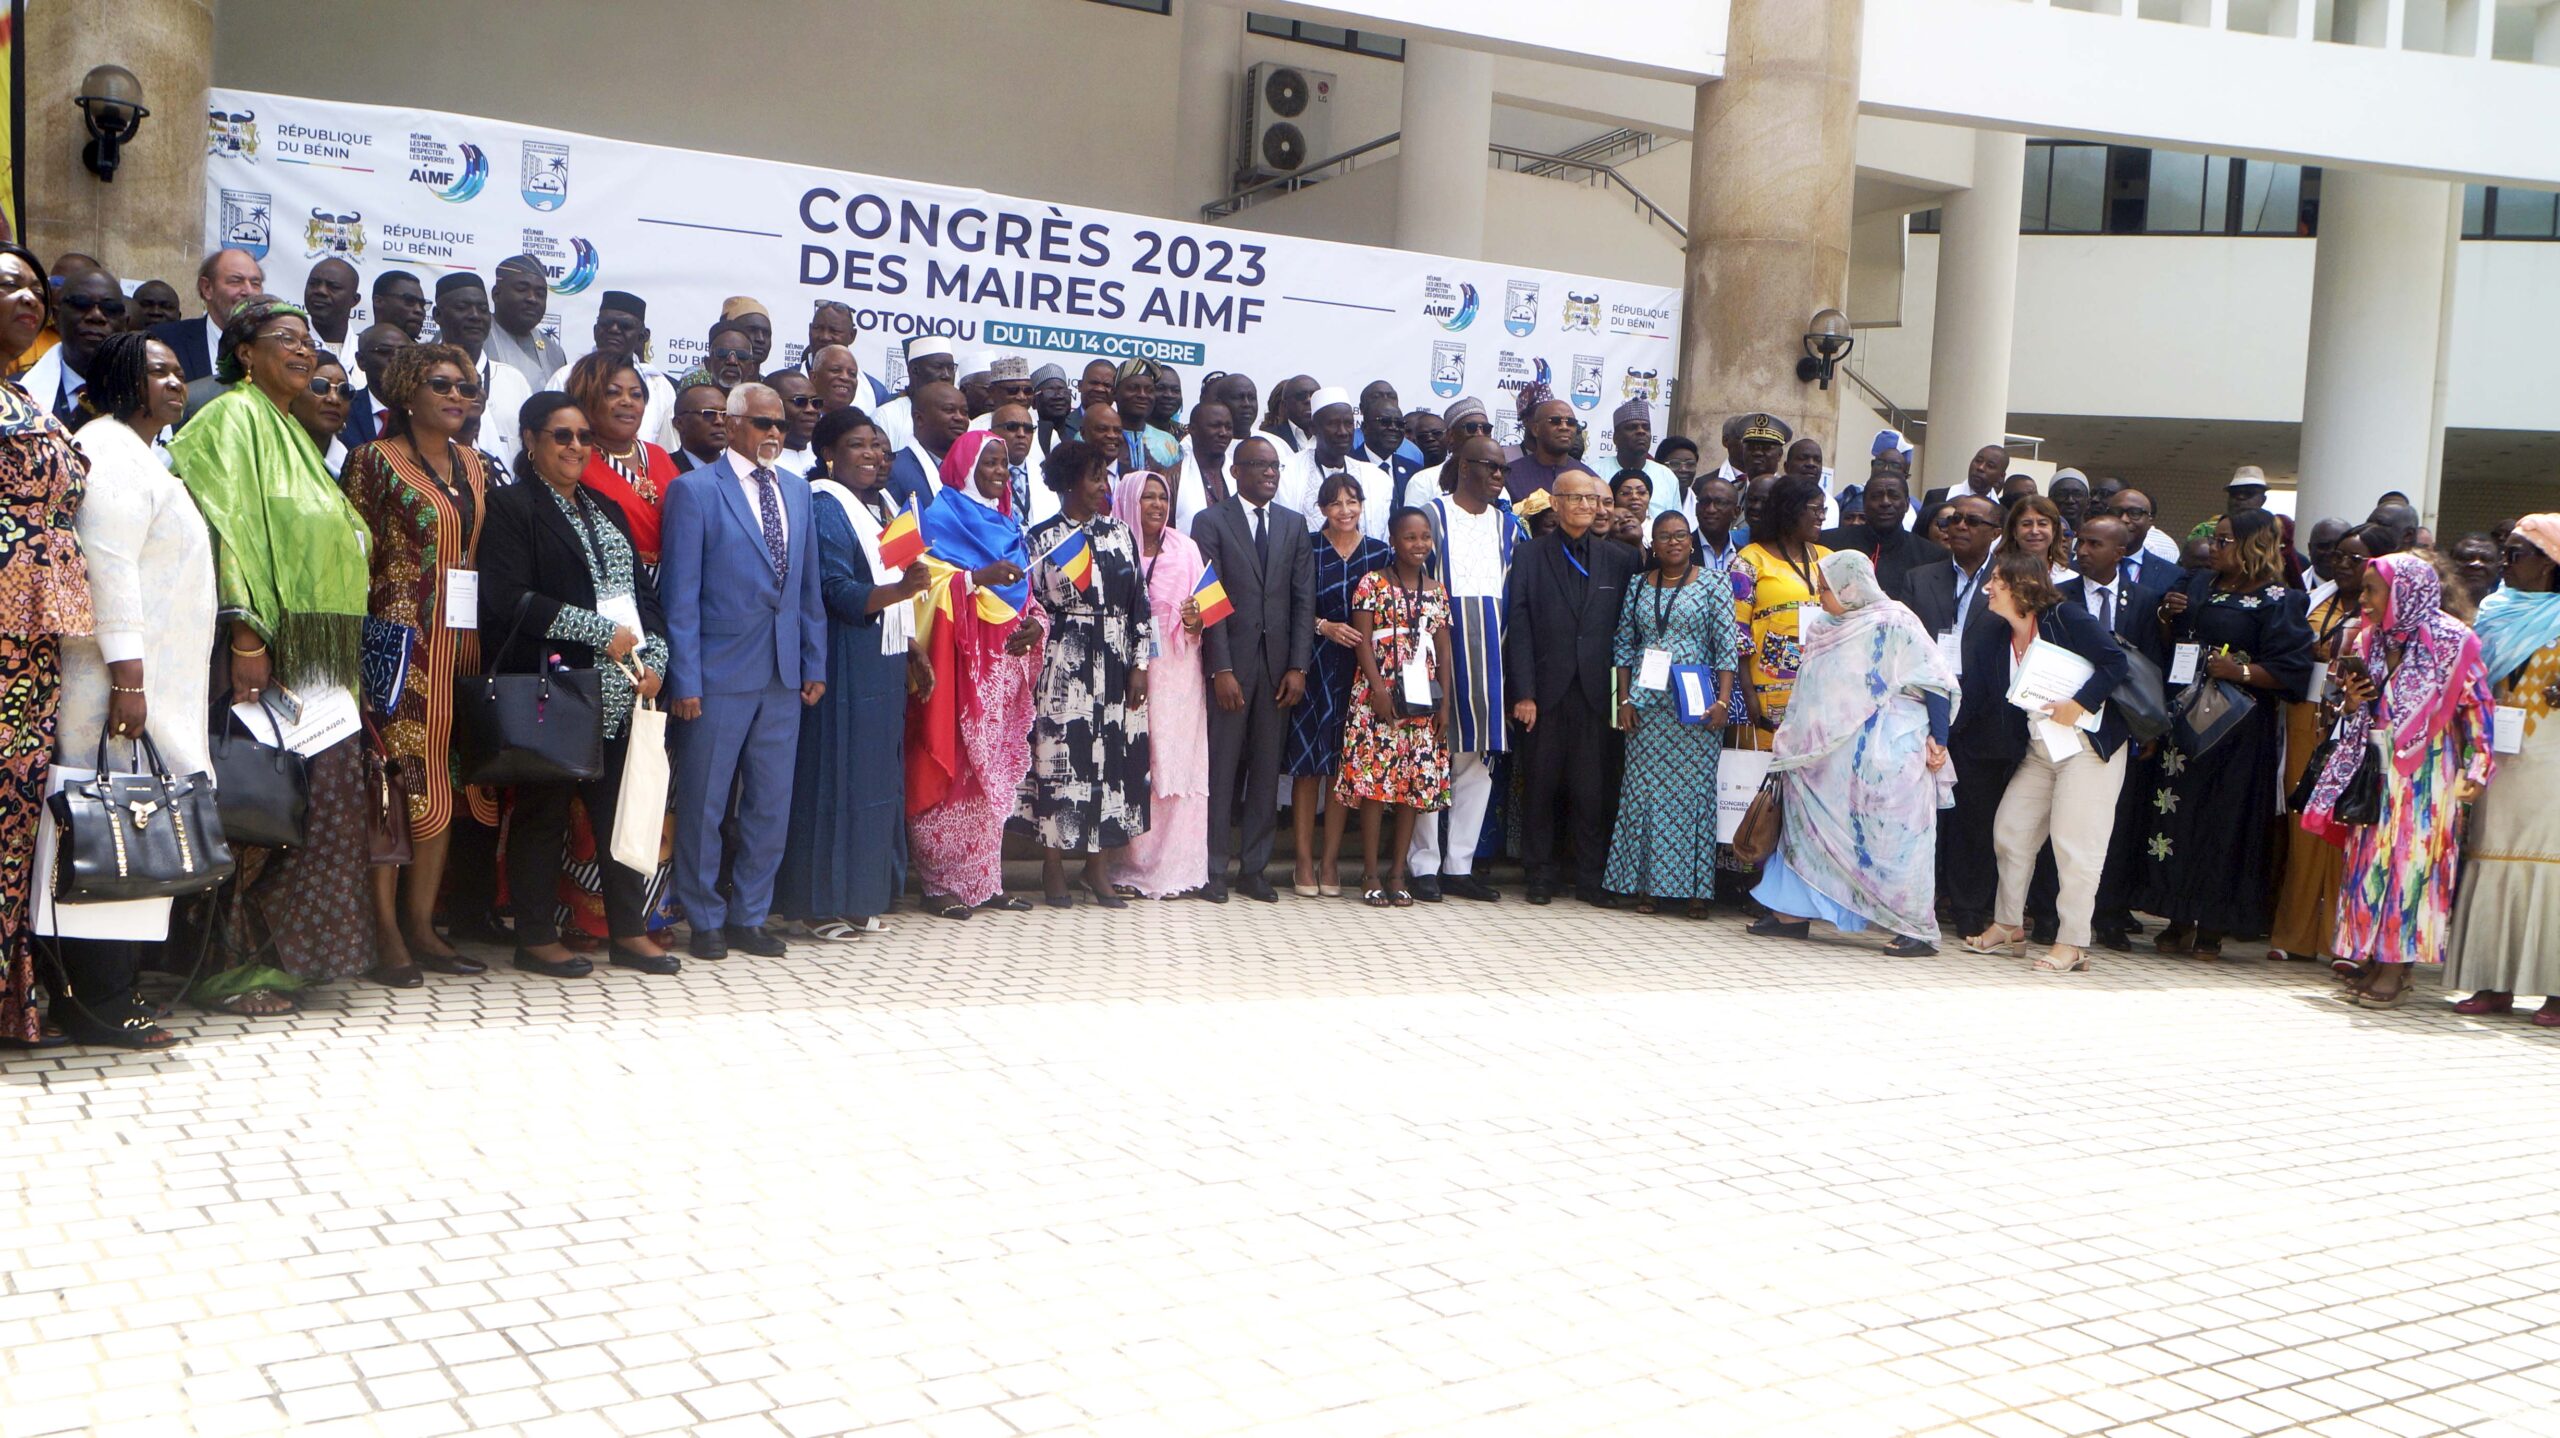 Congrès AIMF Cotonou 2023 : Le colloque sur les arts et les cultures urbaines, l’attention de la deuxième journée